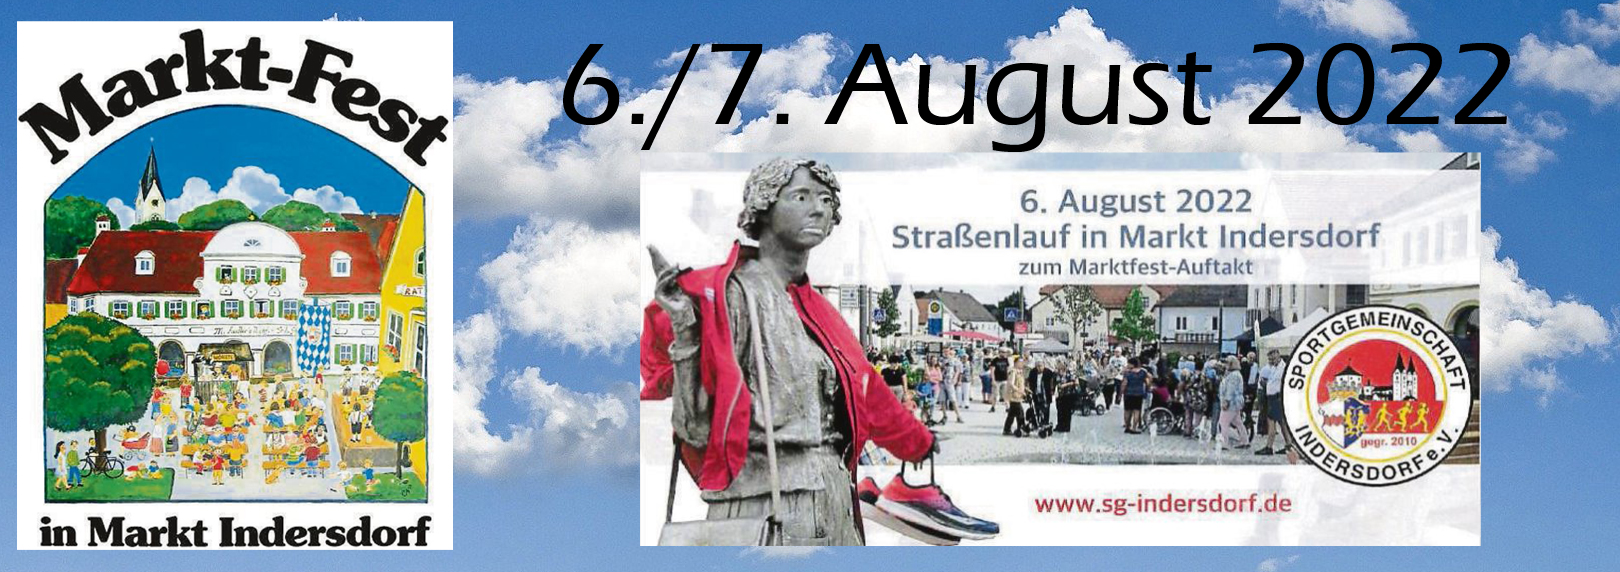 Marktfest mit Straßenlauf am 6./7. August 2022